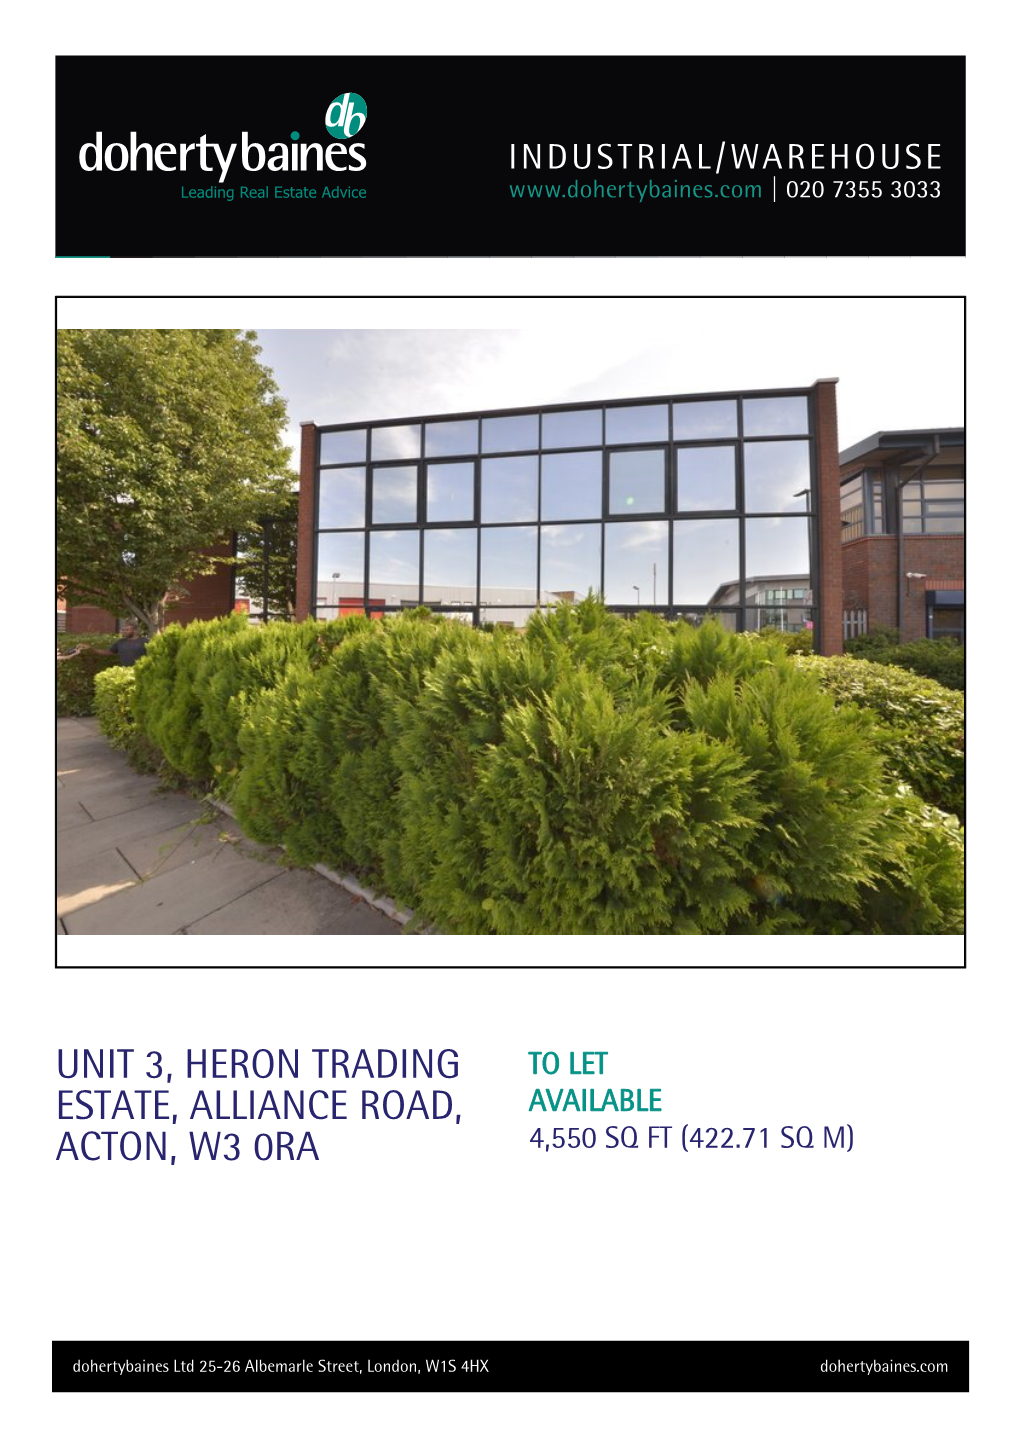 Unit 3, Heron Trading Estate, Alliance Road, Acton, W3 0RA